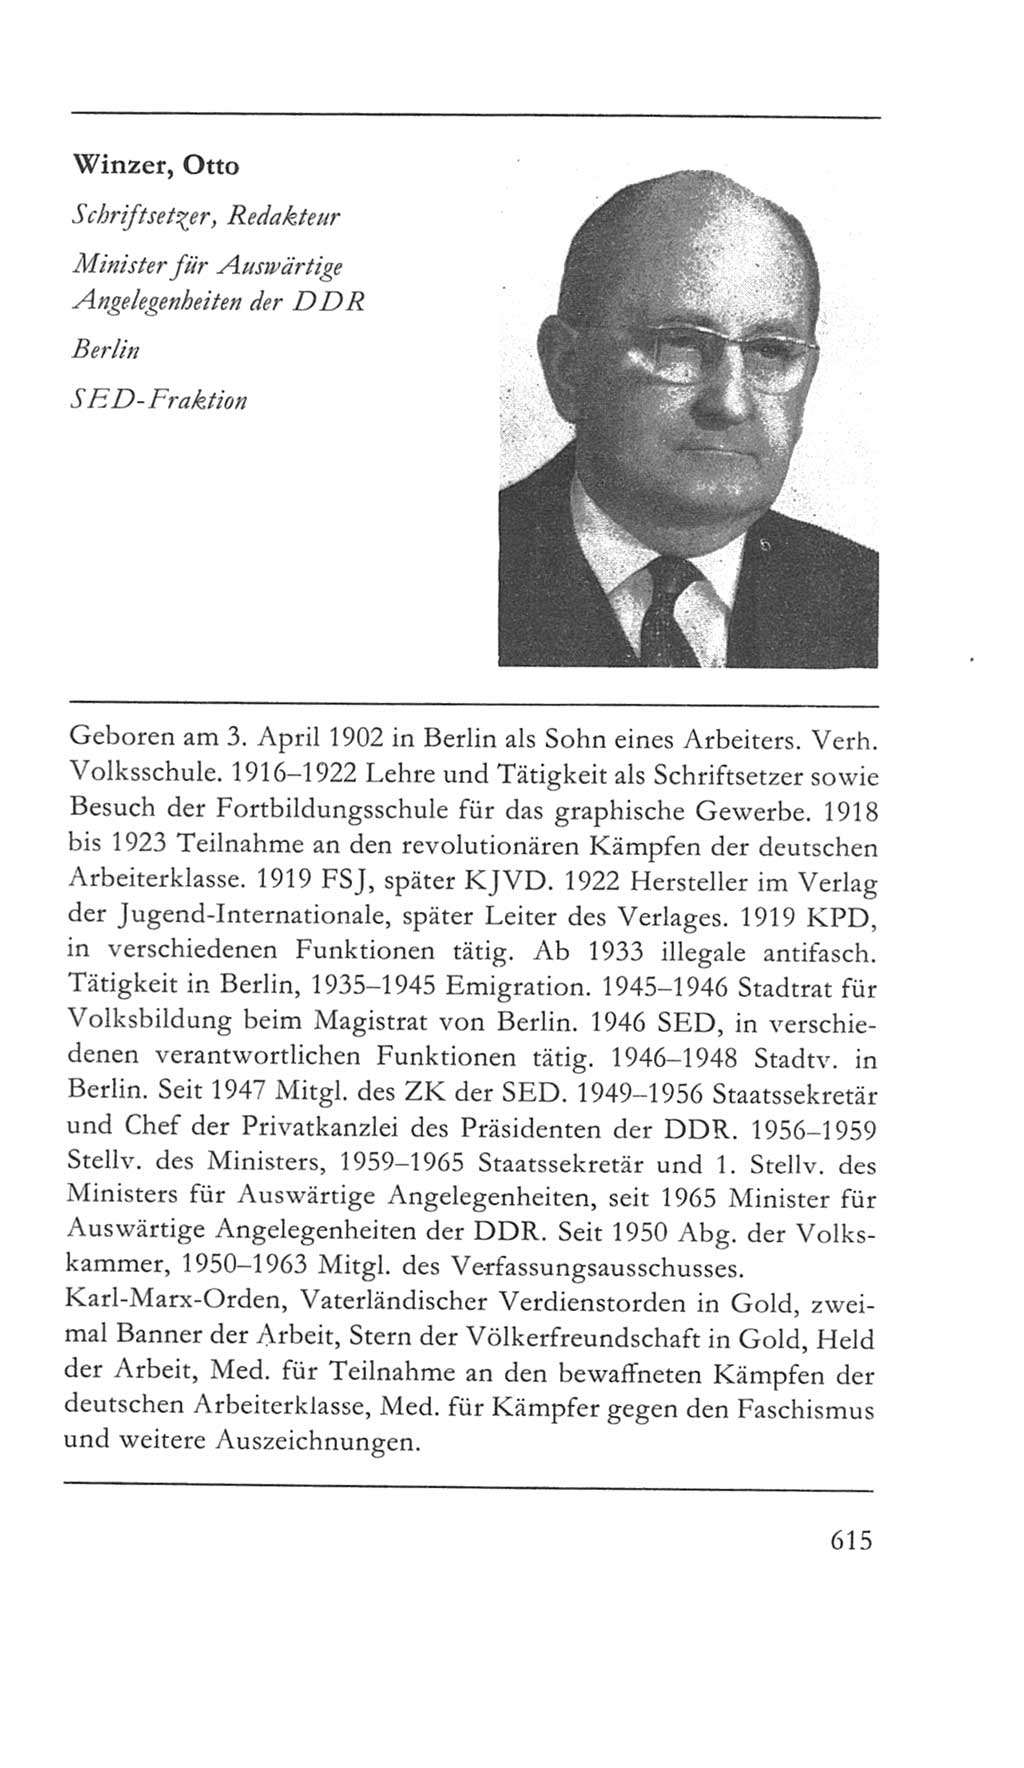 Volkskammer (VK) der Deutschen Demokratischen Republik (DDR) 5. Wahlperiode 1967-1971, Seite 615 (VK. DDR 5. WP. 1967-1971, S. 615)